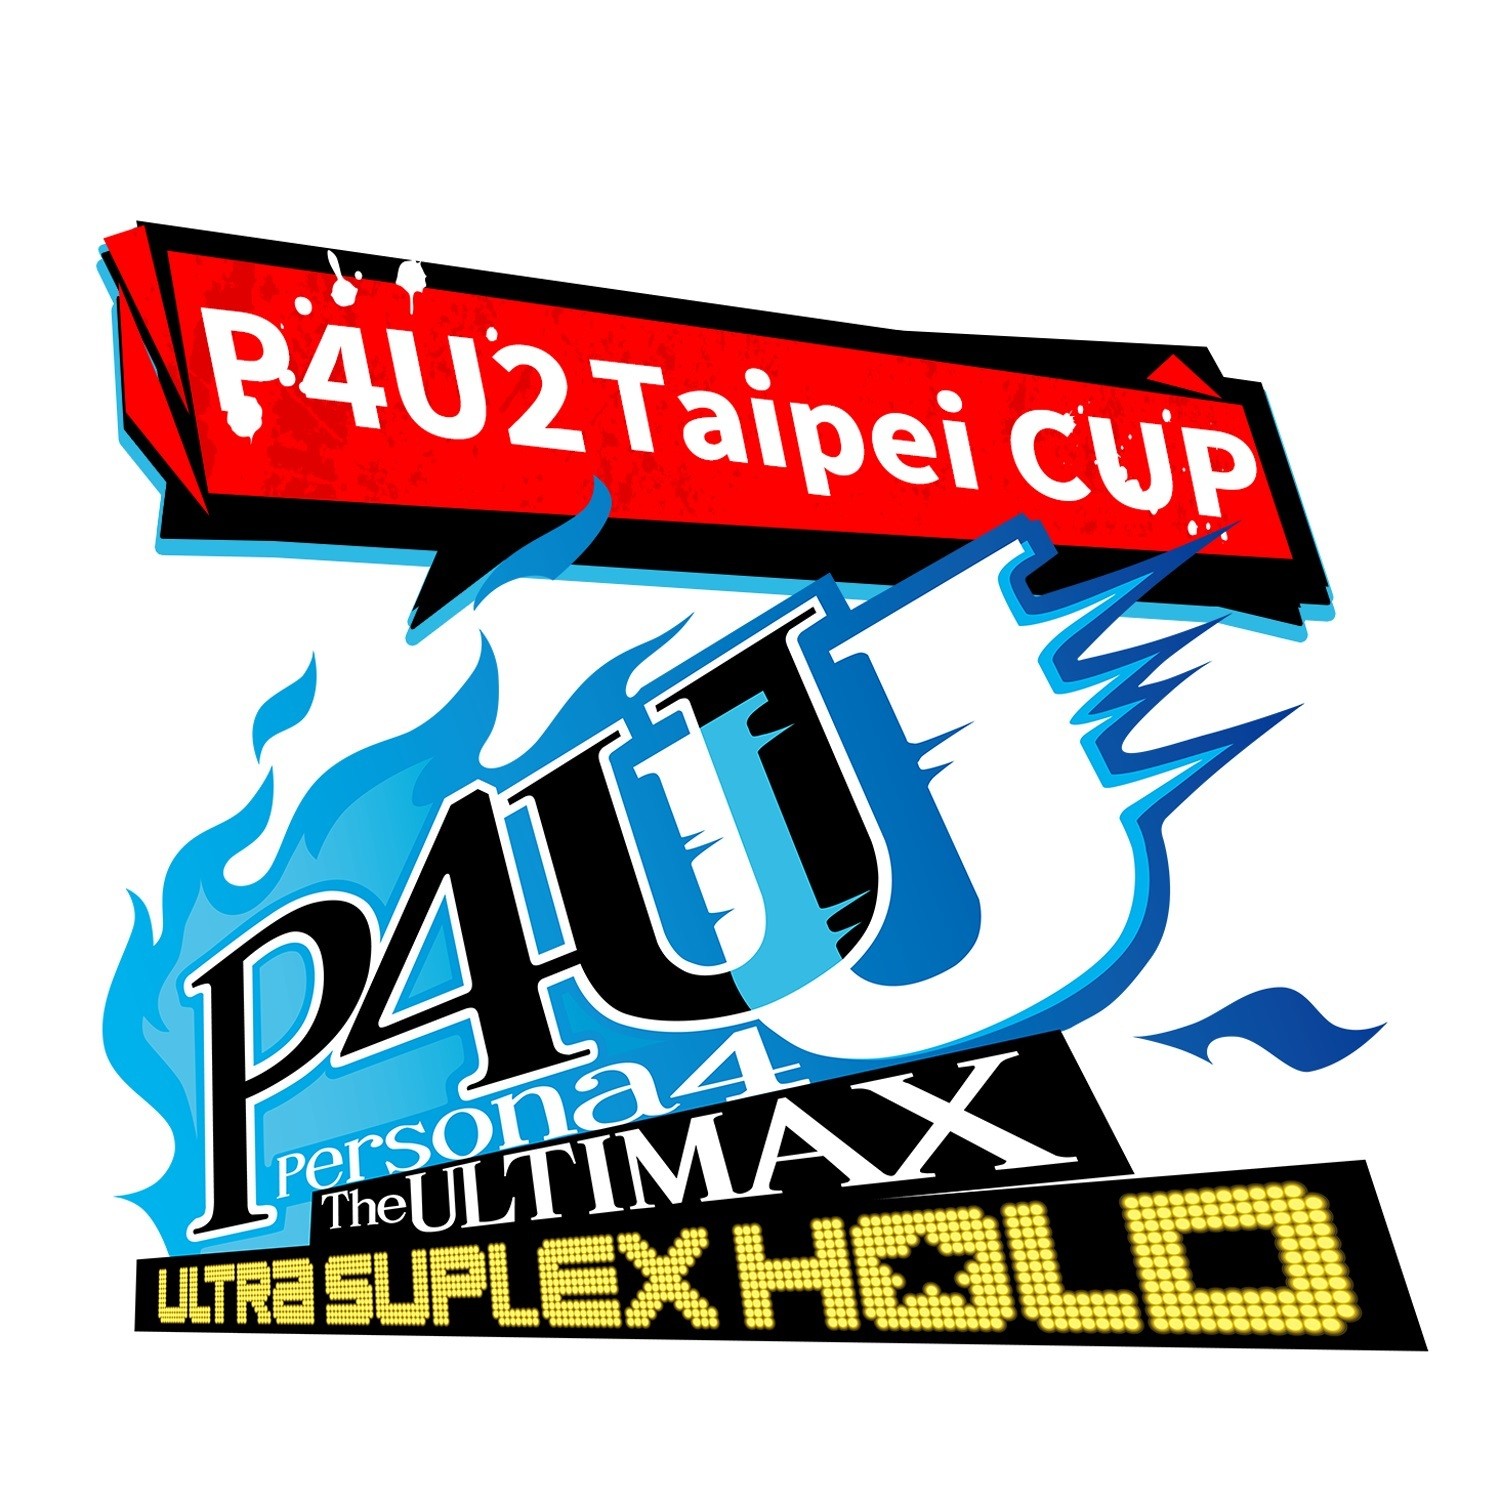 《女神異聞錄 4 無敵究極背橋摔 》「P4U2 Taipei CUP」格鬥賽報名開始